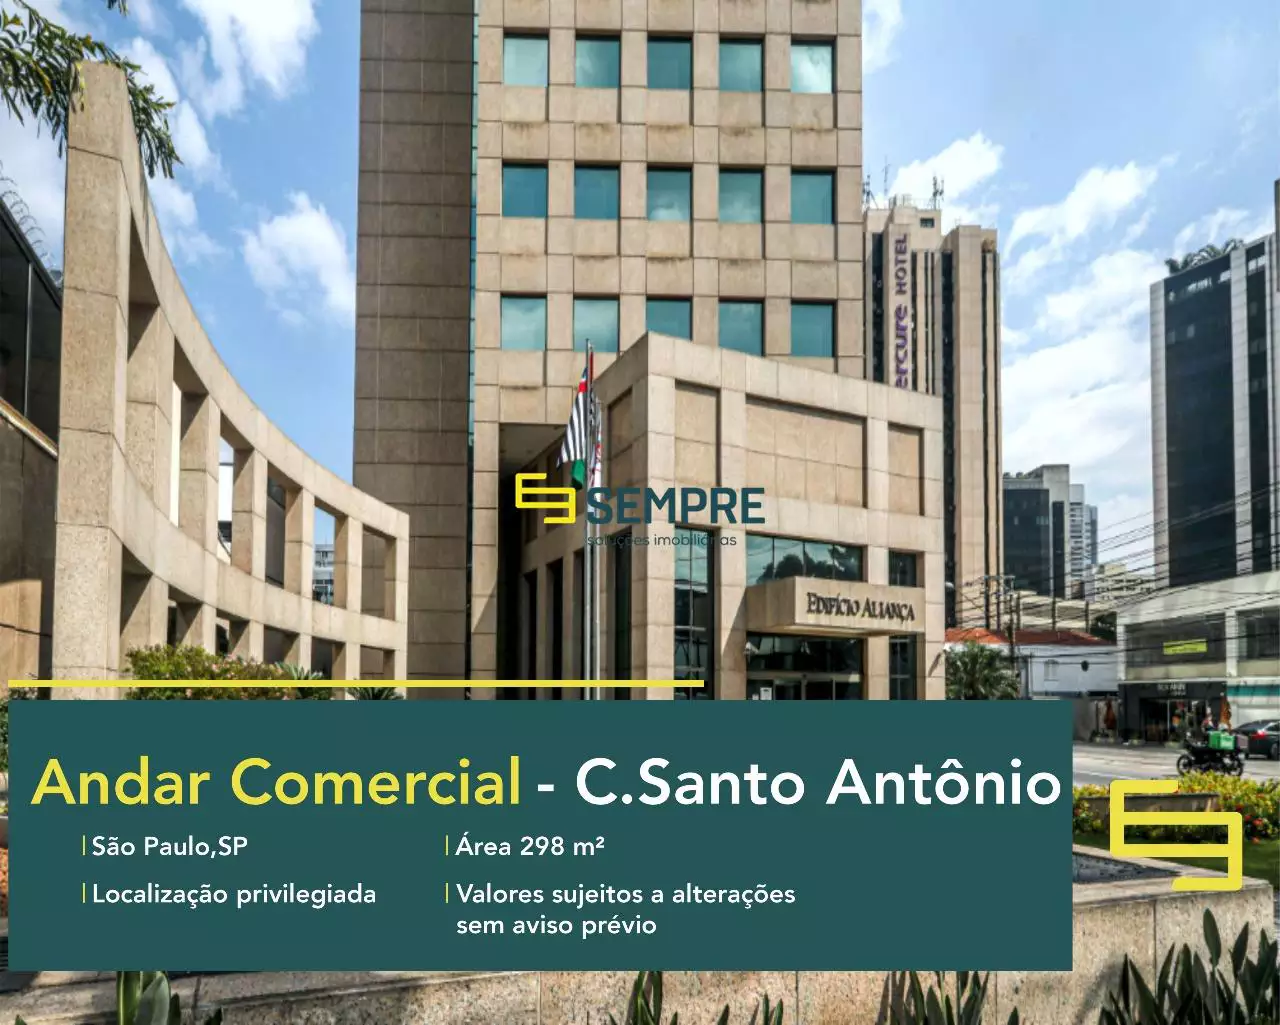 Andar corrido no Chácara Santo Antônio para locação em SP, em excelente localização. O ponto comercial conta com área de 298,39 m².